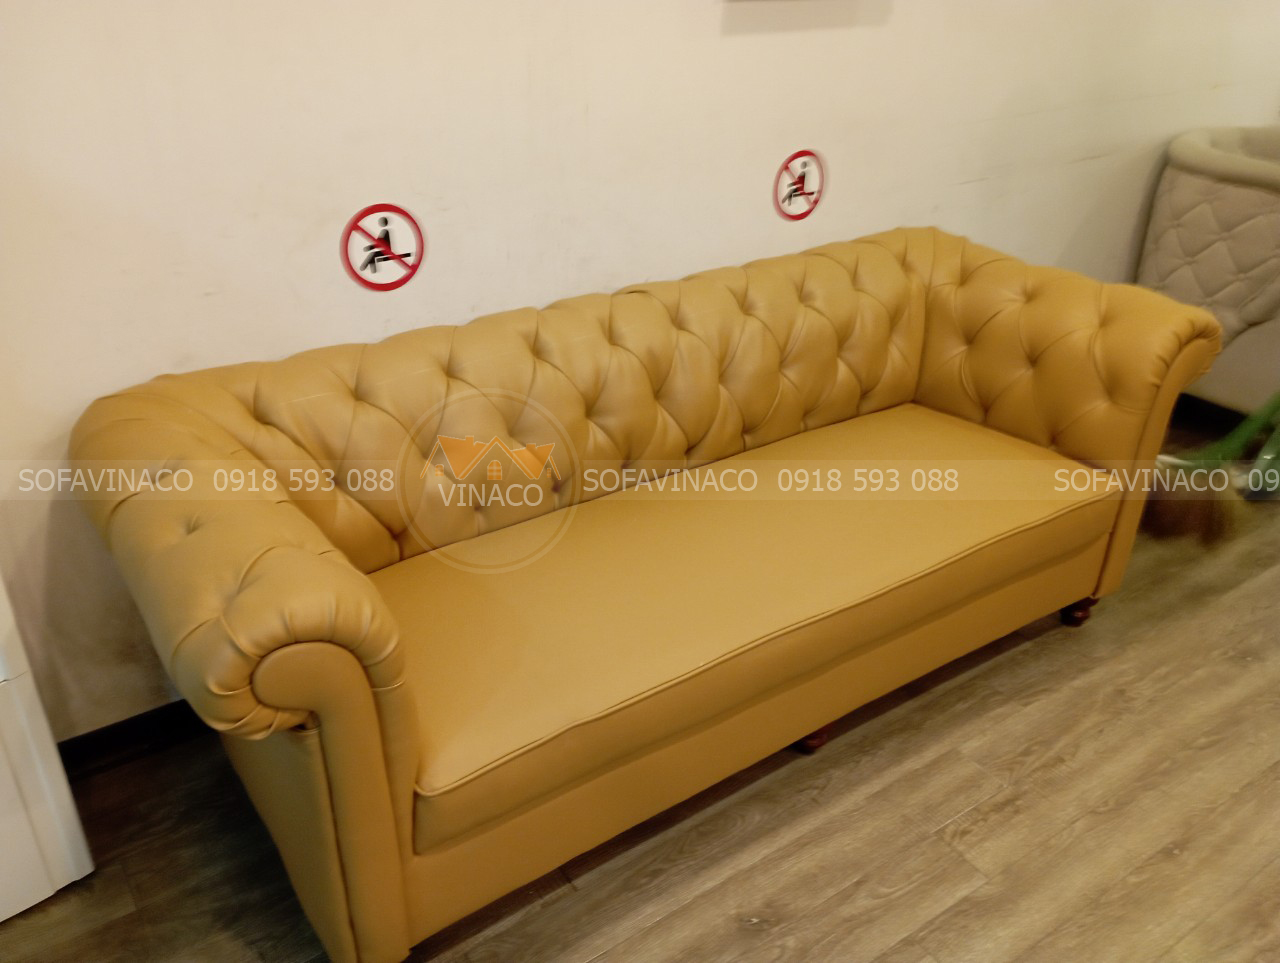 Bộ ghế sofa tân cổ điển được thay đổi lớp da mới sáng sủa, sạch sẽ hơn bao giờ hết